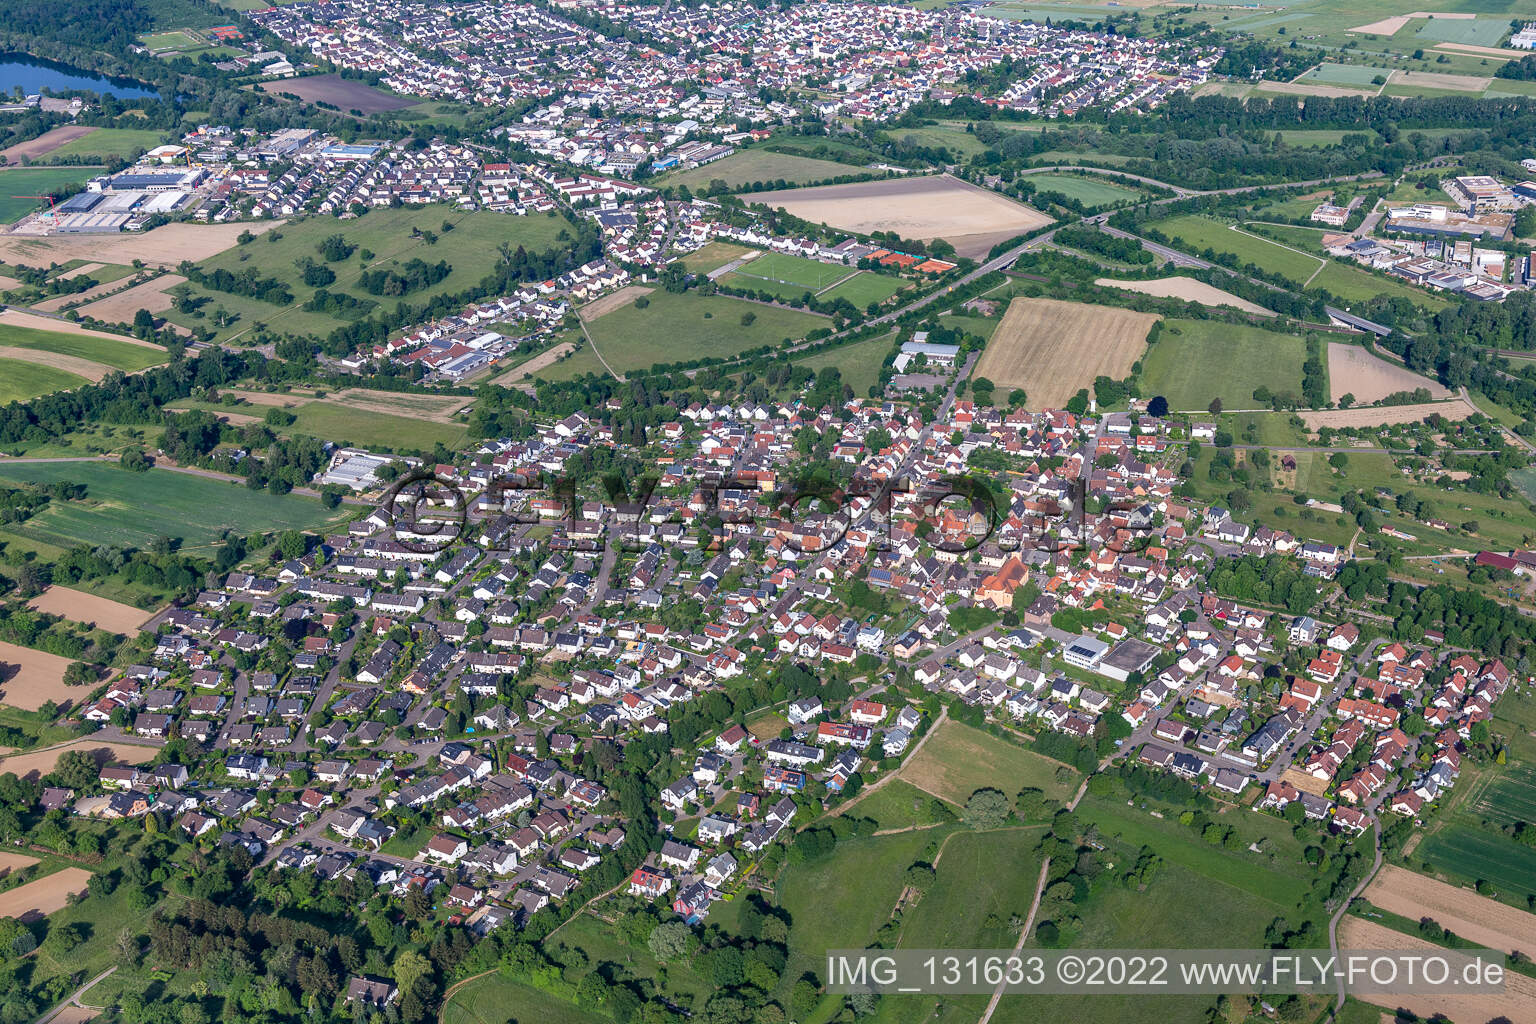 Luftbild von Ortsteil Ettlingenweier im Bundesland Baden-Württemberg, Deutschland